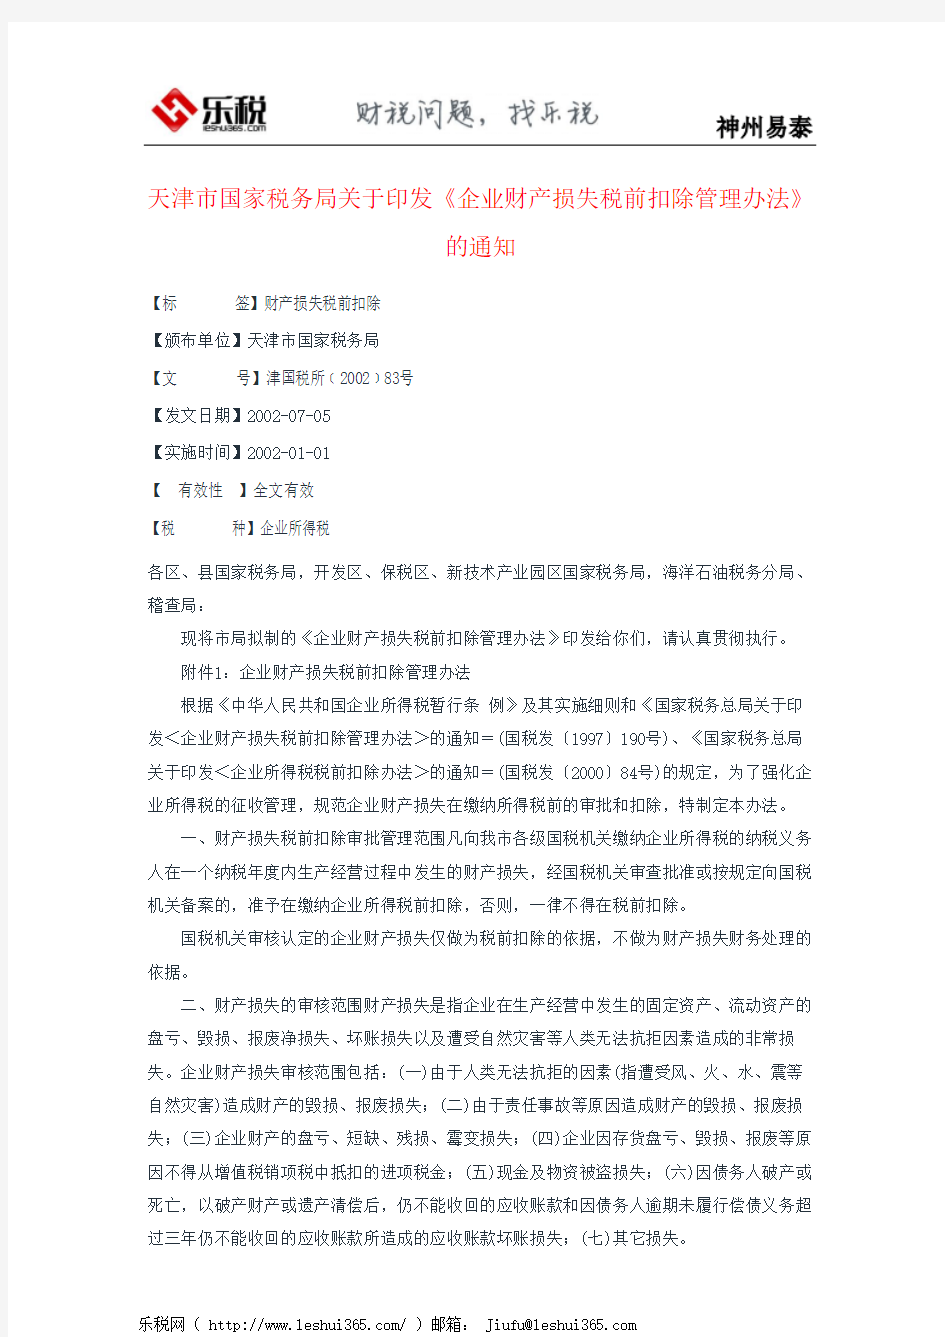 天津市国家税务局关于印发《企业财产损失税前扣除管理办法》的通知